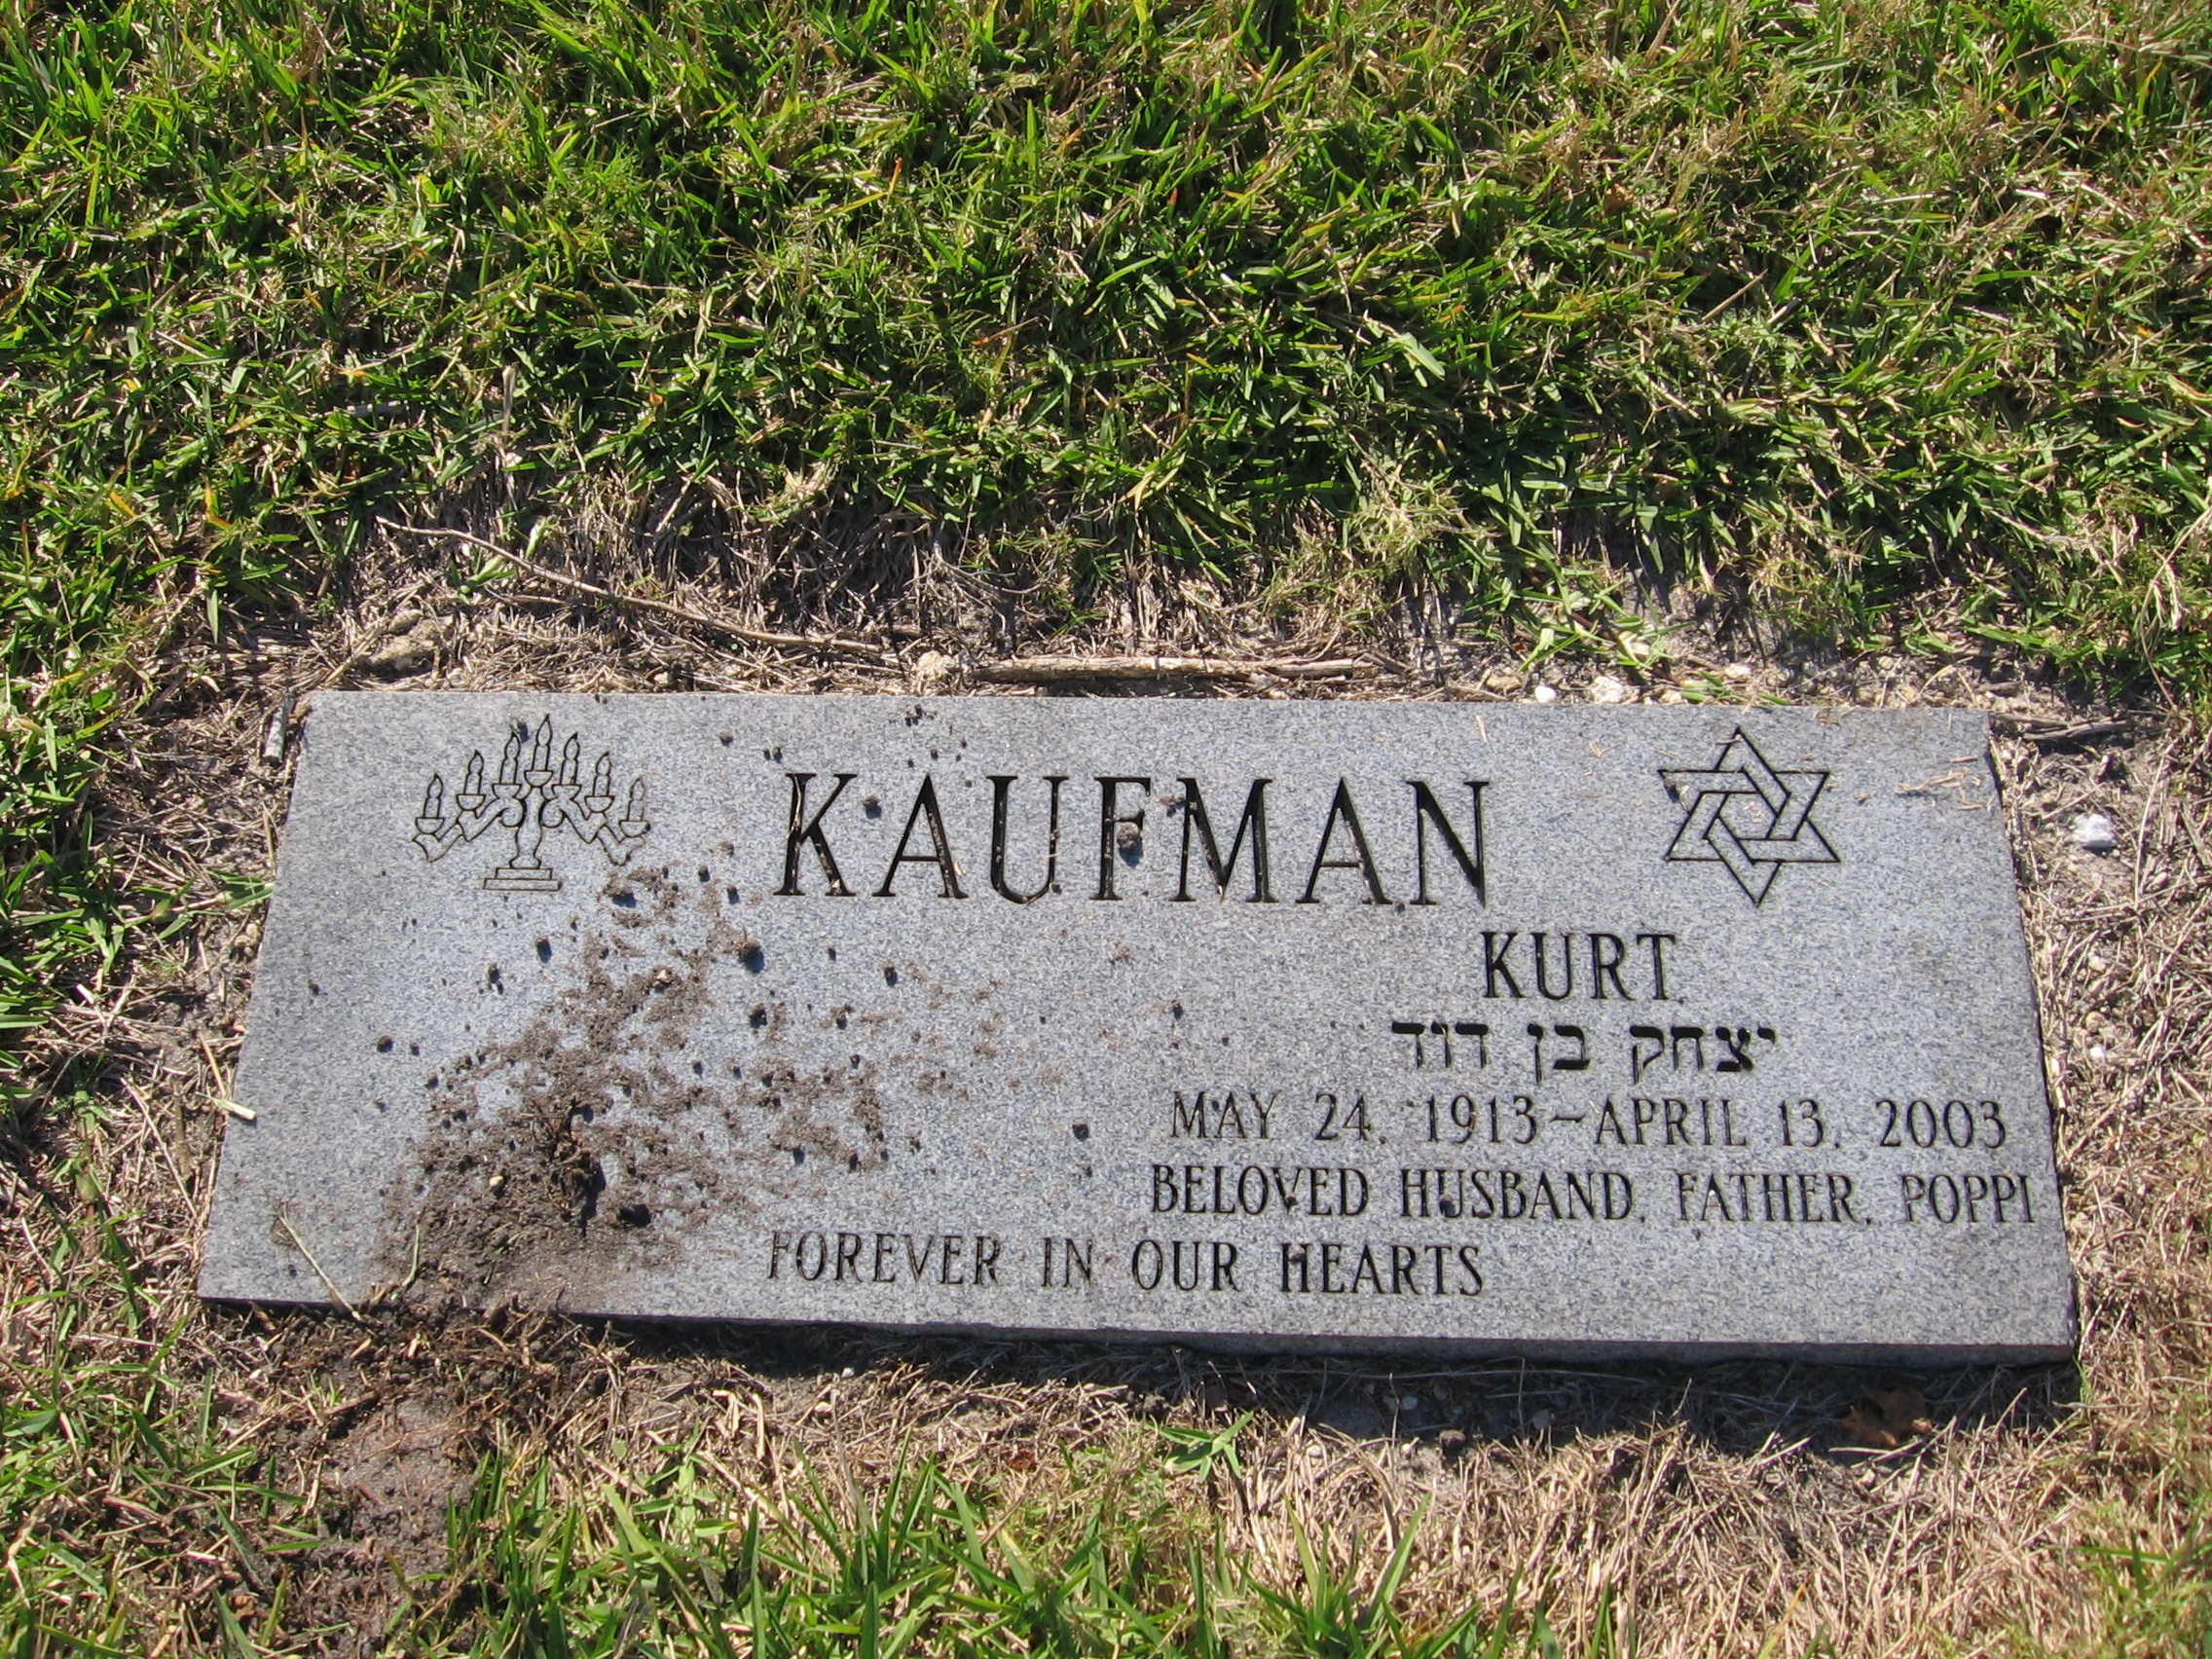 Kurt Kaufman